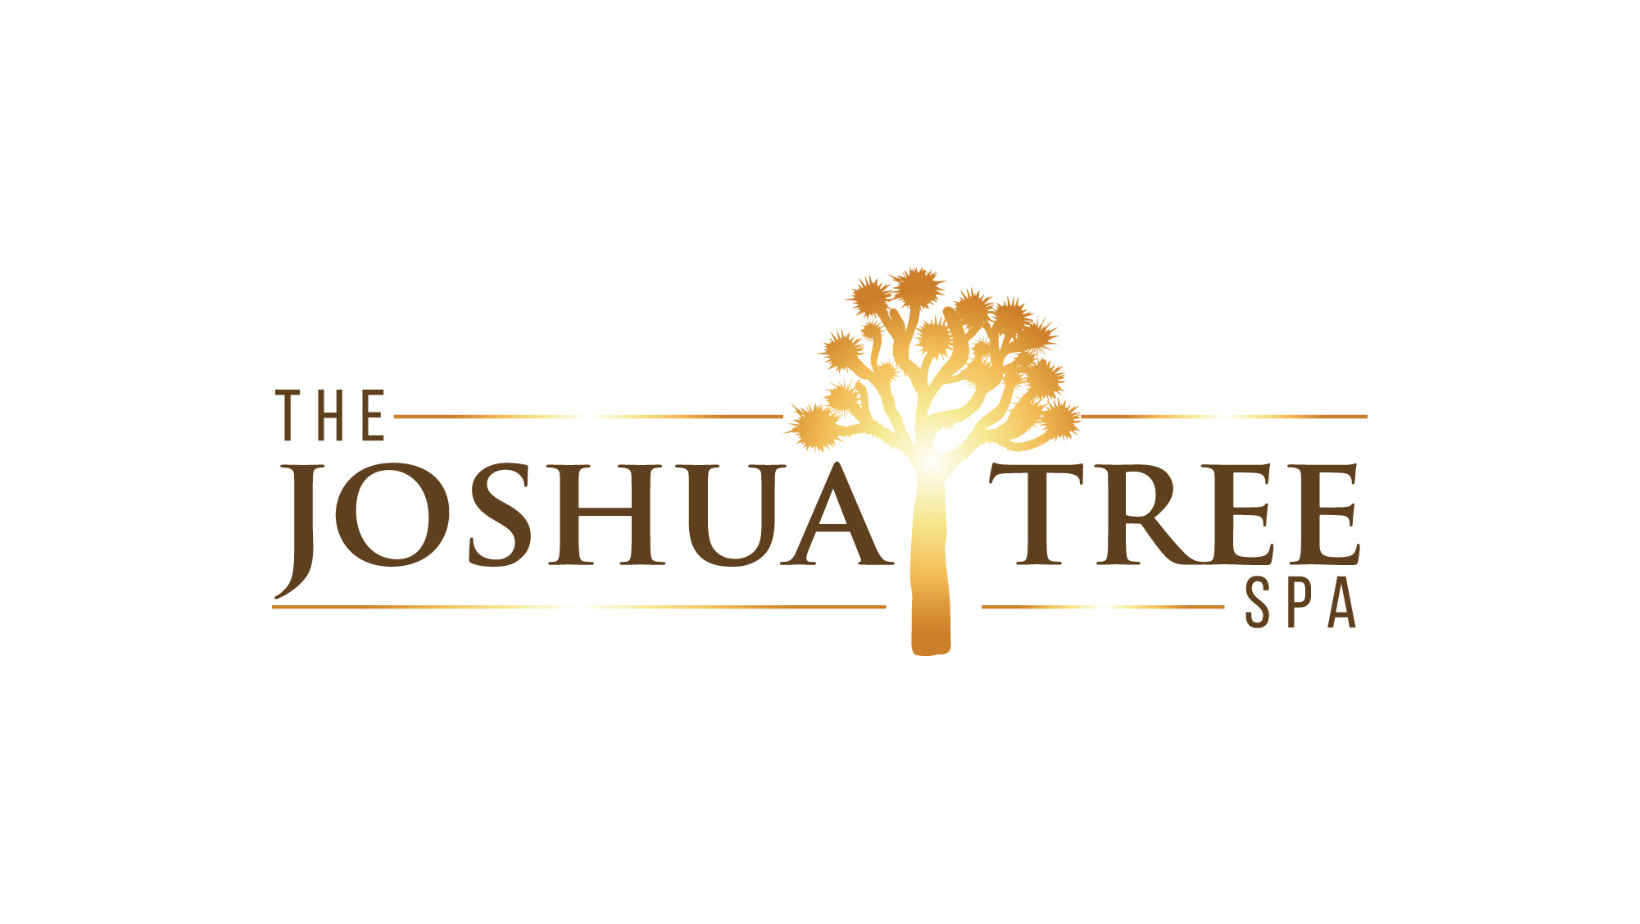 The Joshua Tree Spa